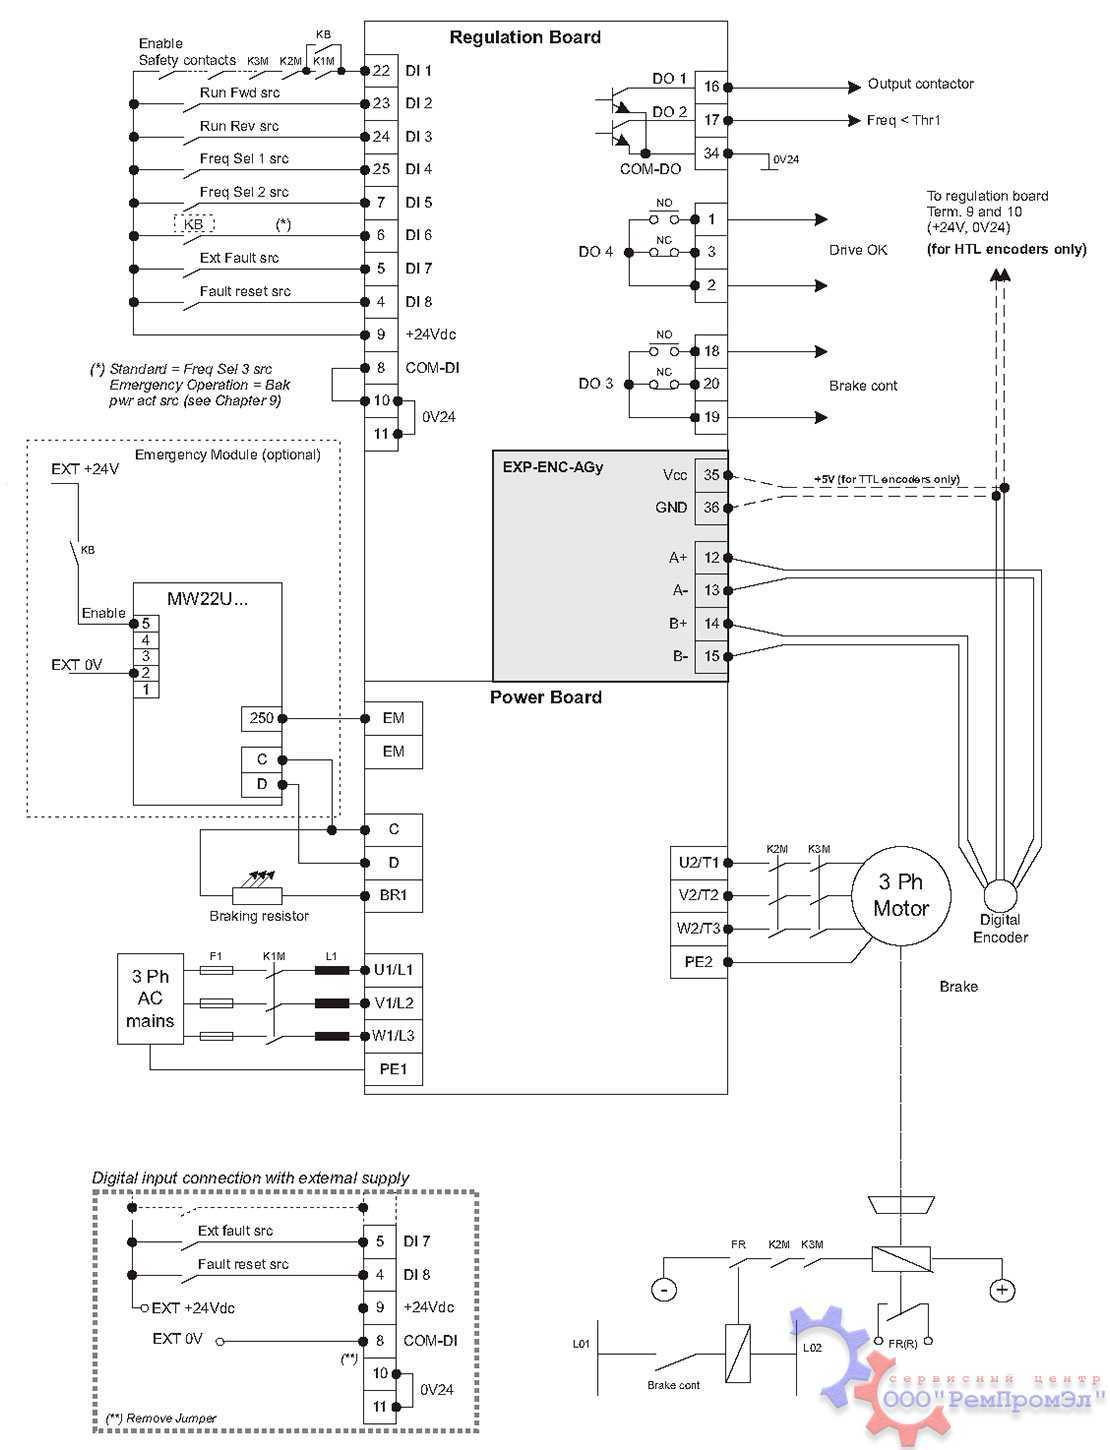 Стандартная проводка AGy-L и подключение аварийного модуля MW22U (опционально)